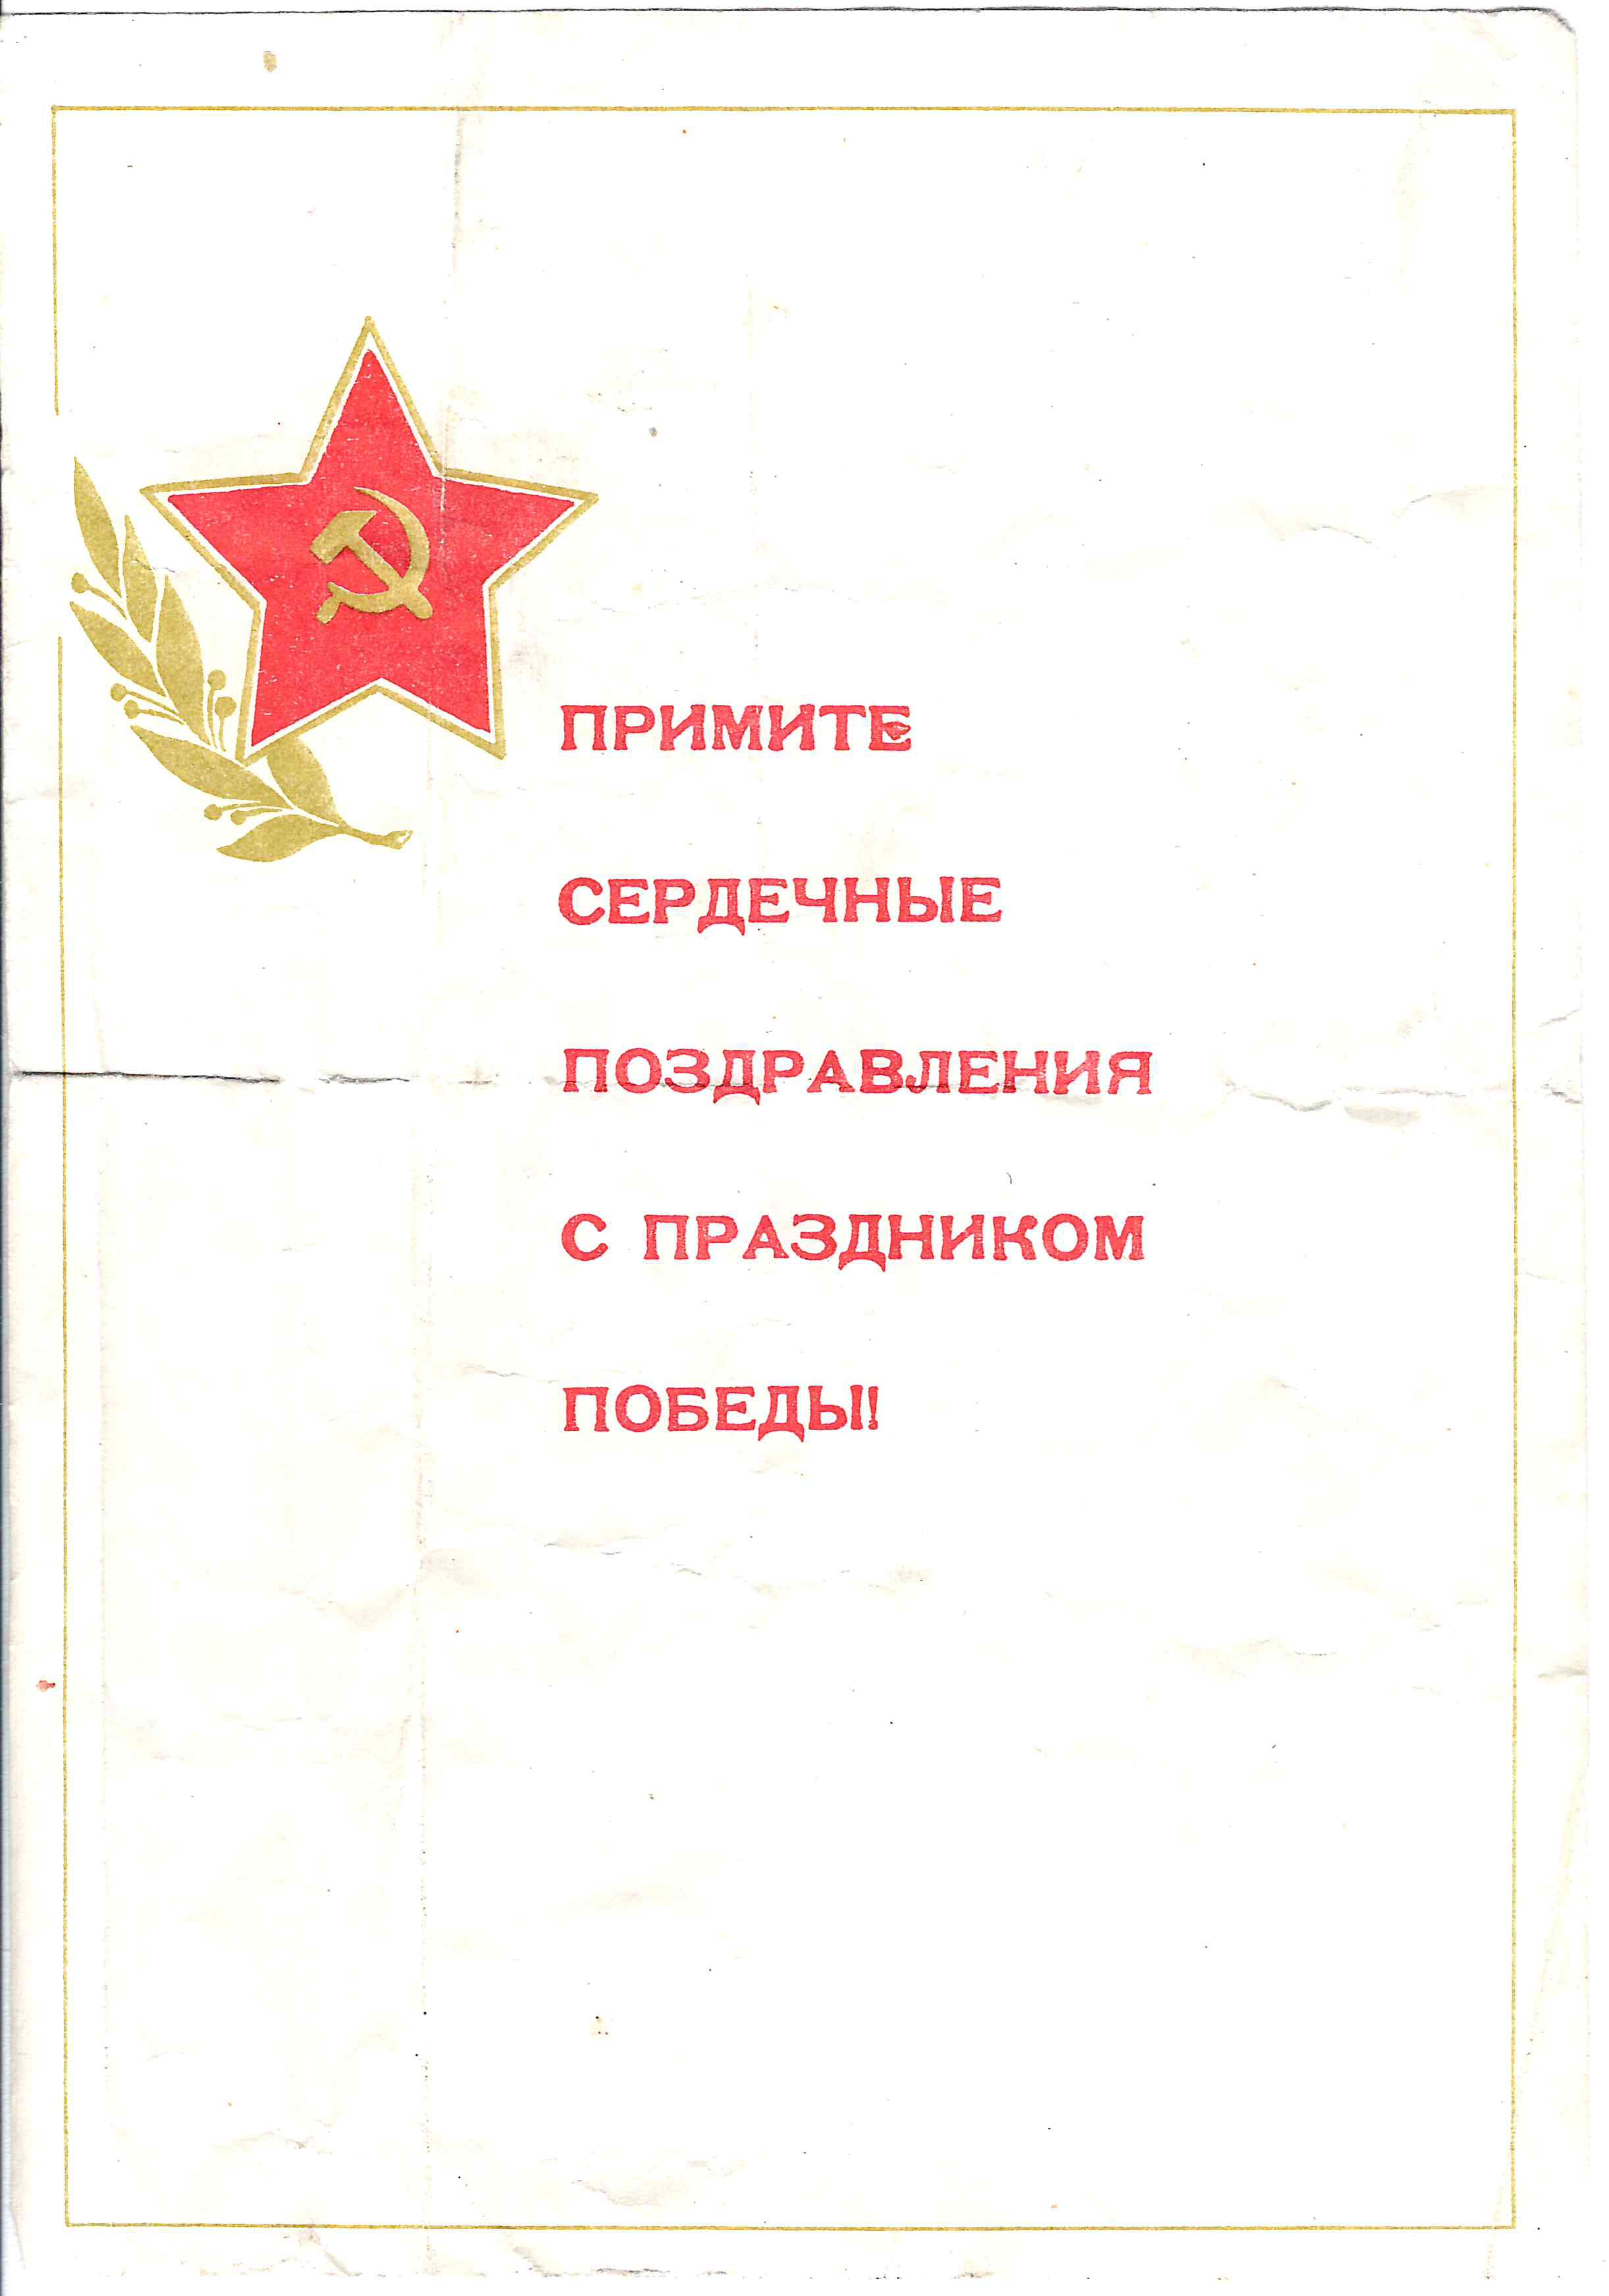 9 виньеток, вкладышей, рекламных карточек «День Победы».  1960-е - 1980-е годы.